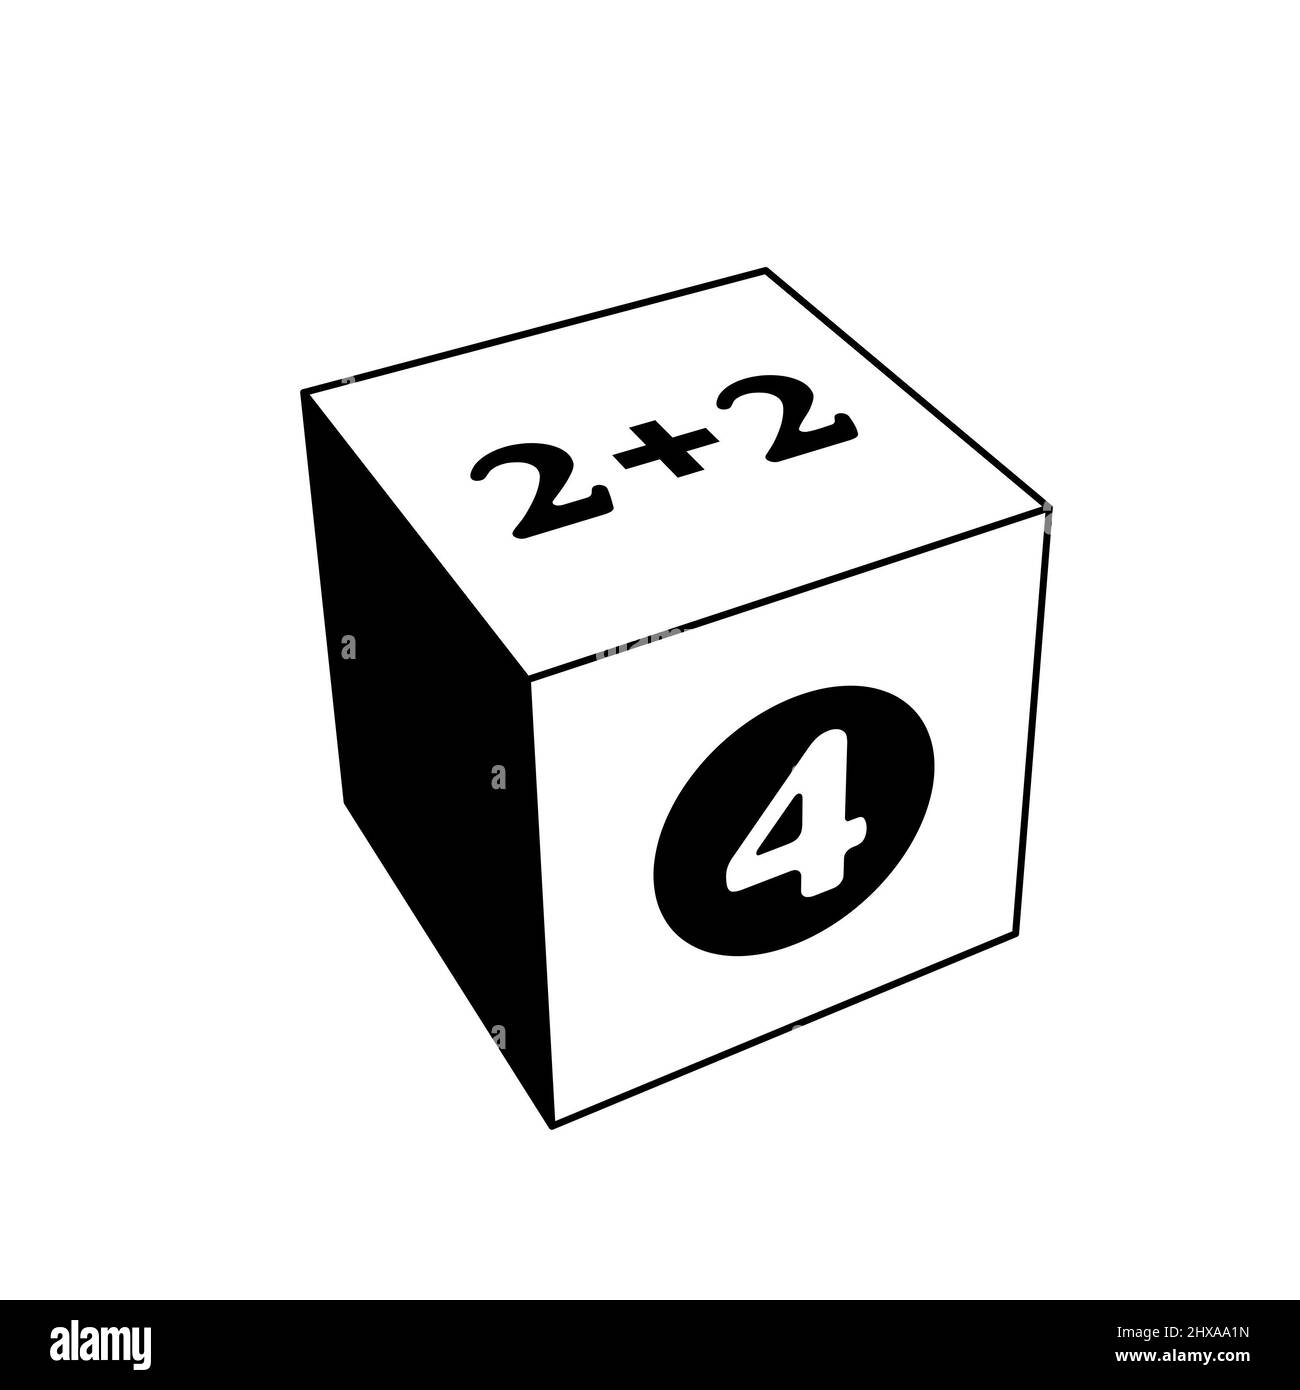 aggiunta di base di una cifra per i bambini con risposta, esempio semplice. illustrazione 3d in bianco e nero isolata su bianco Foto Stock